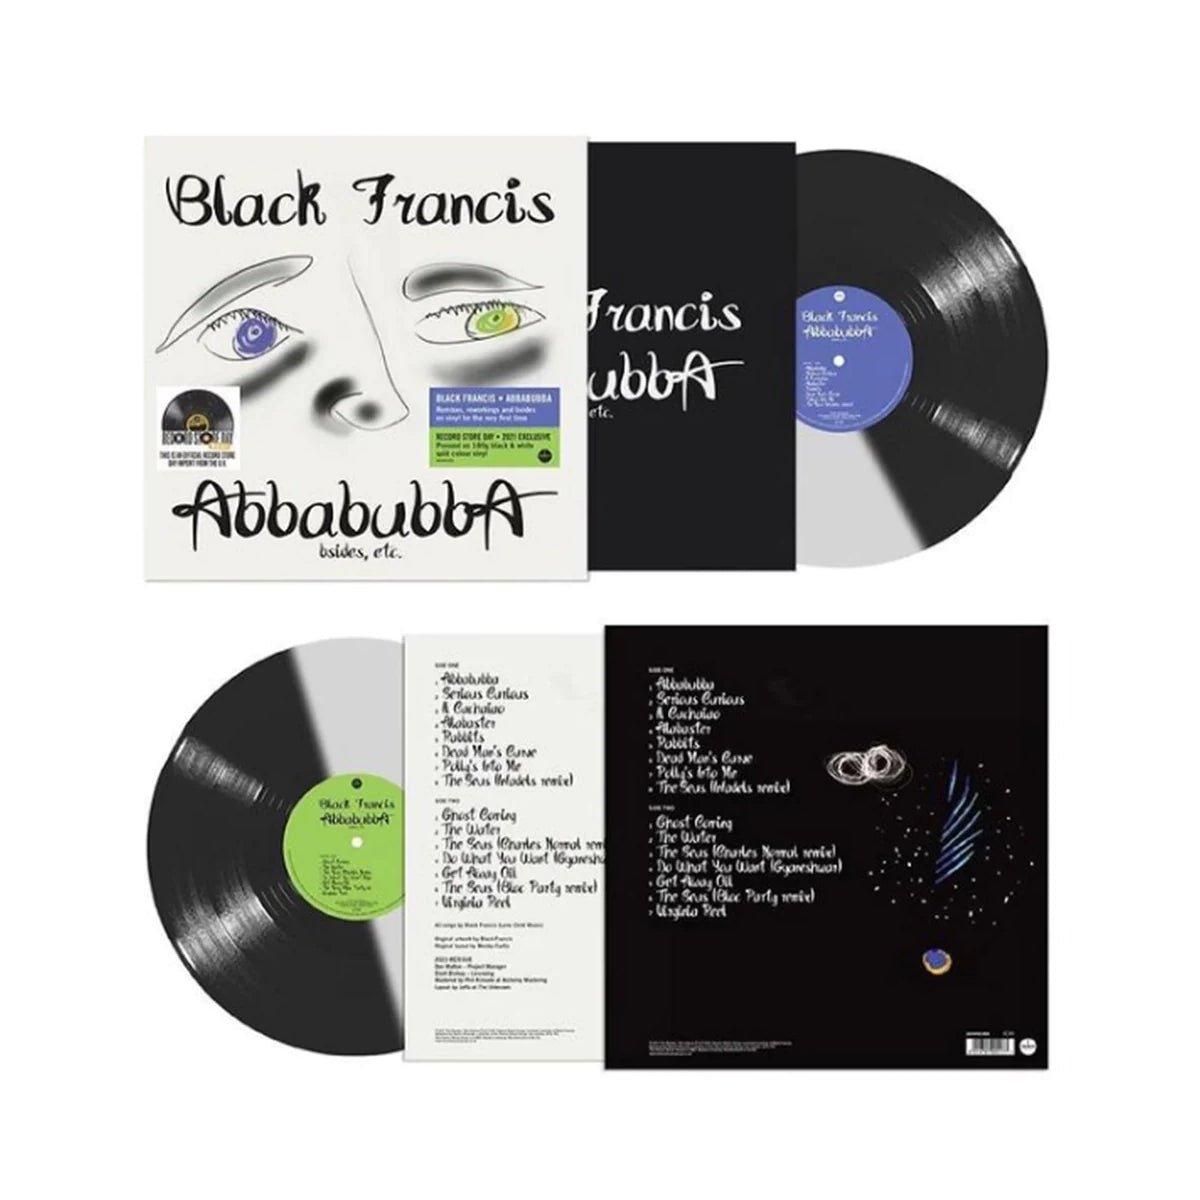 Black Francis - Abbabubba Vinyl